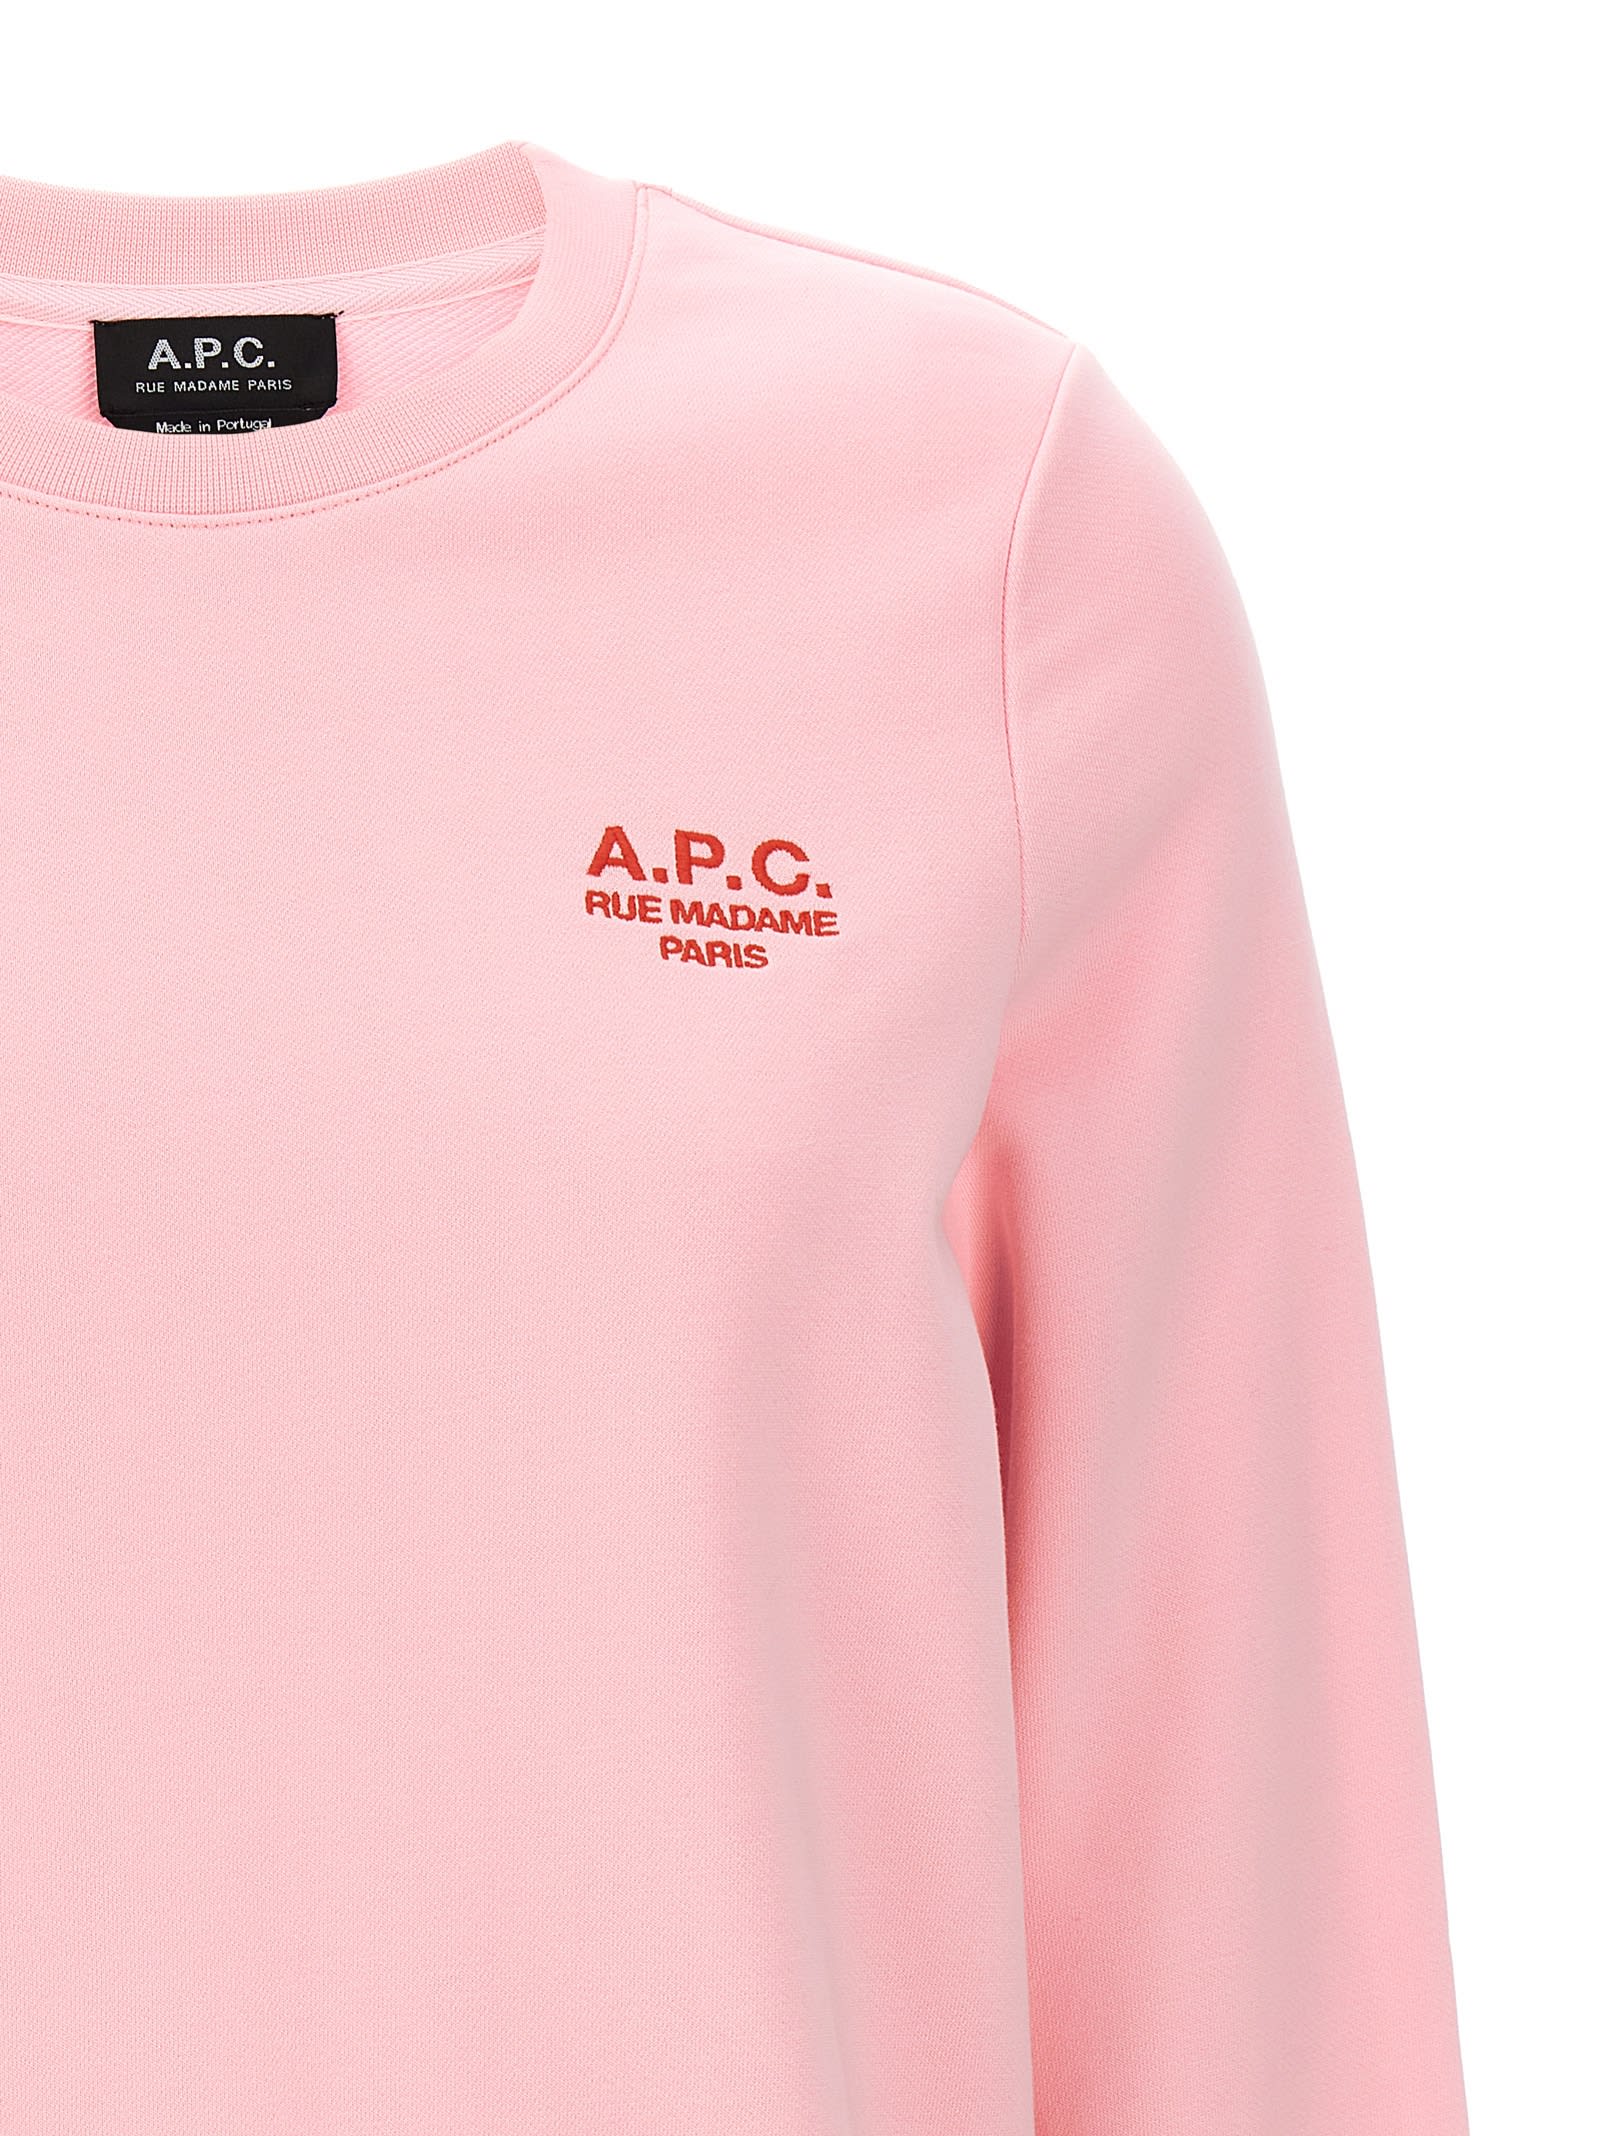 Shop Apc Skye Sweatshirt